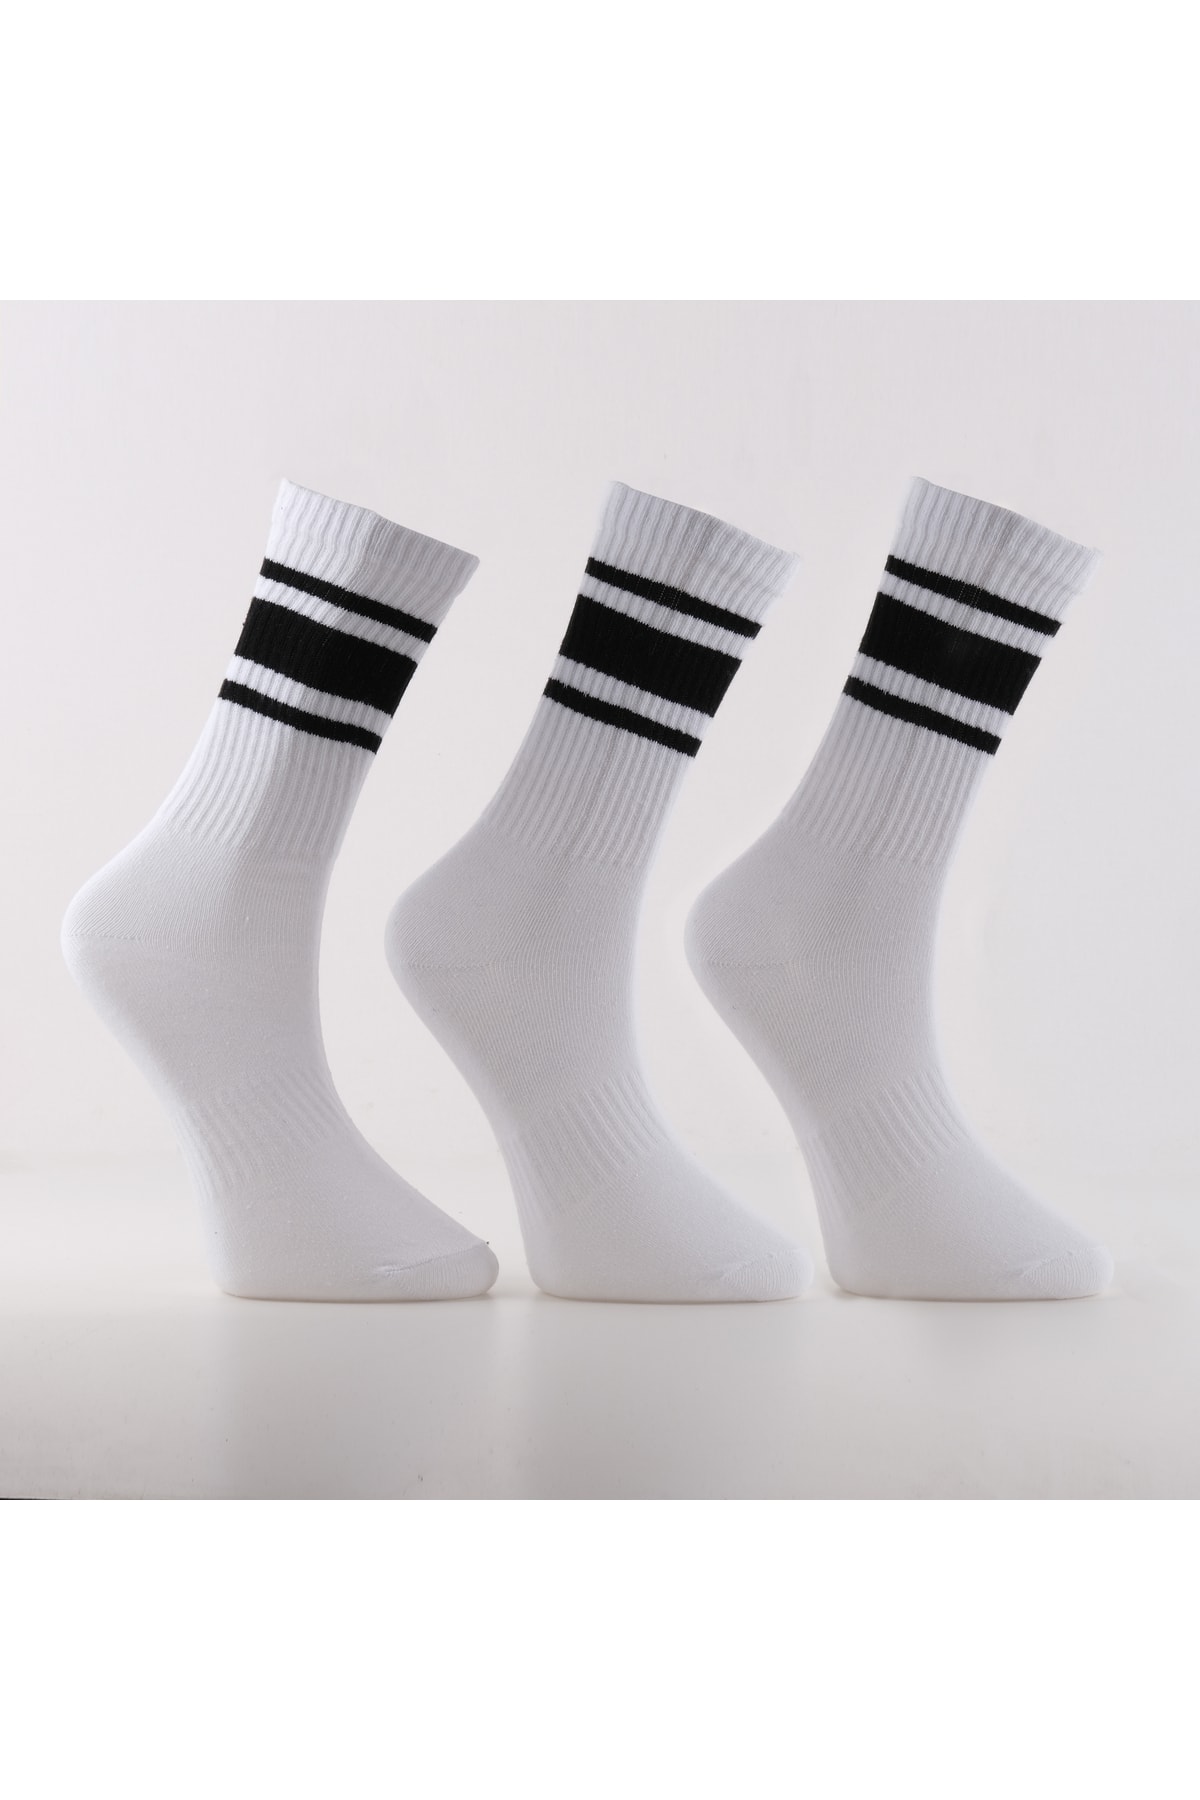 heavytextile Unisex Siyah Çizgili Spor Çorap 3'lü Paket